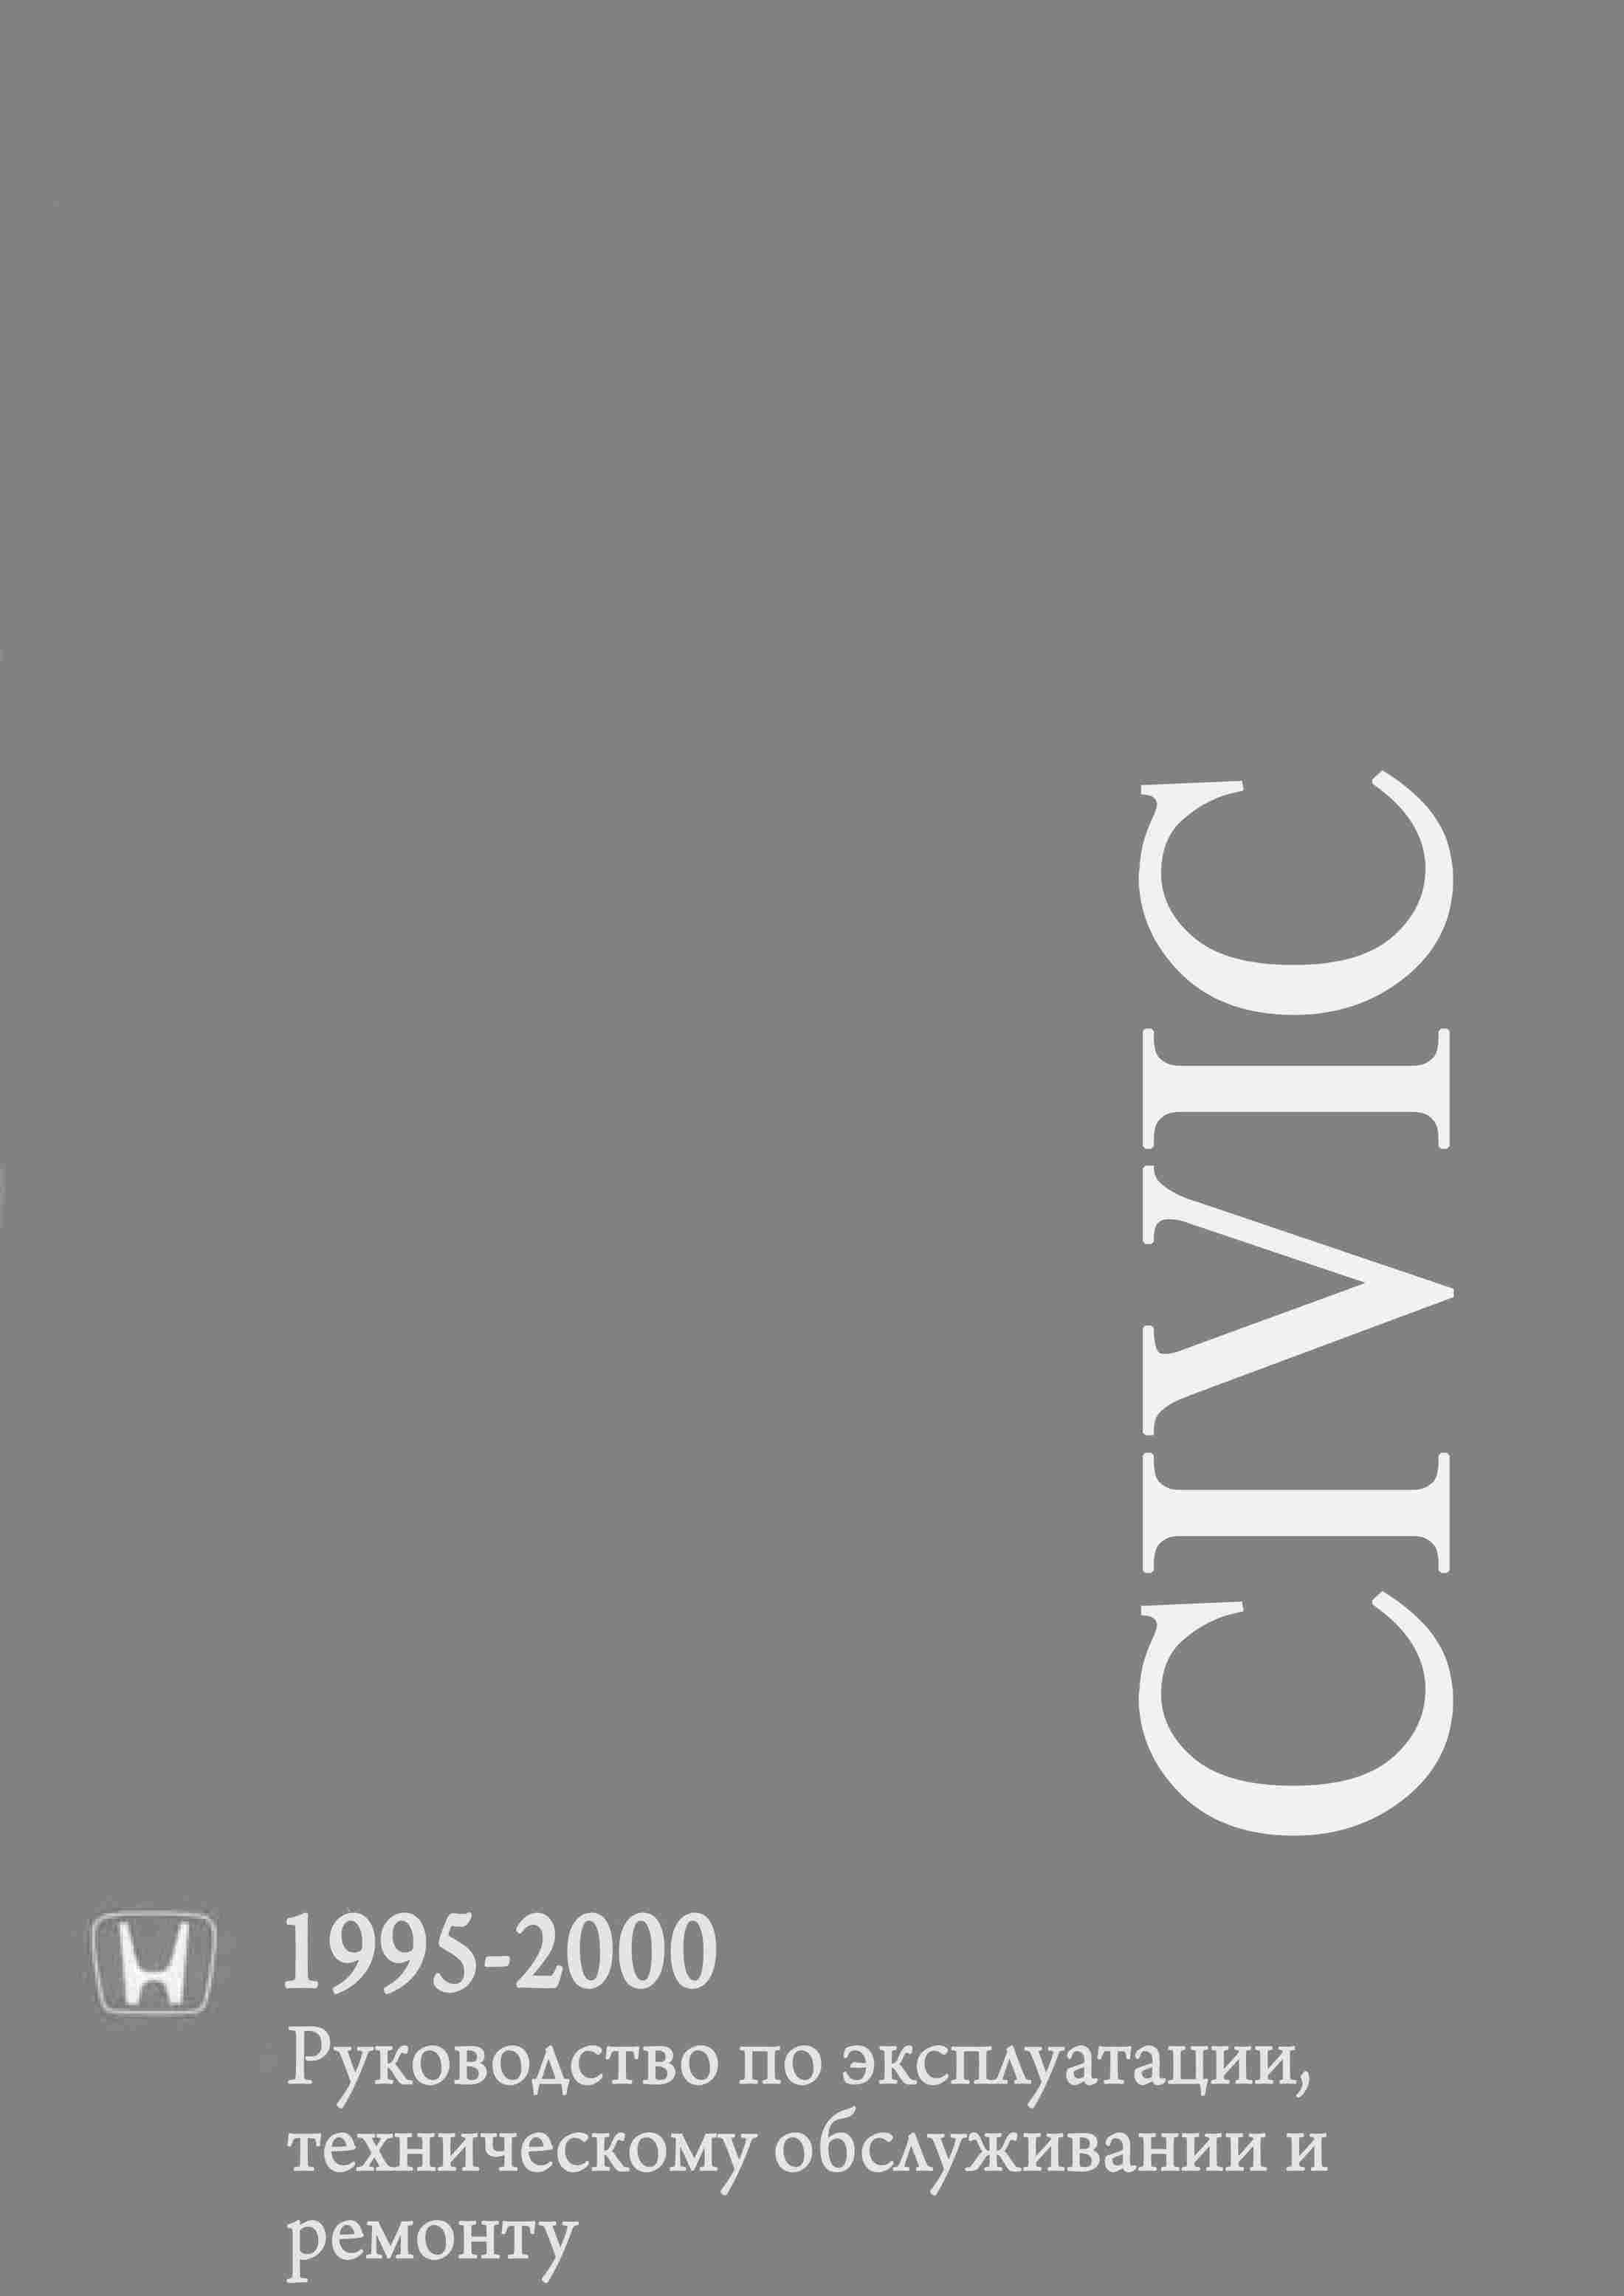 Honda Civic 1995-2000 Ремонт и техническое обслуживание, руководство по эксплуатации обложка